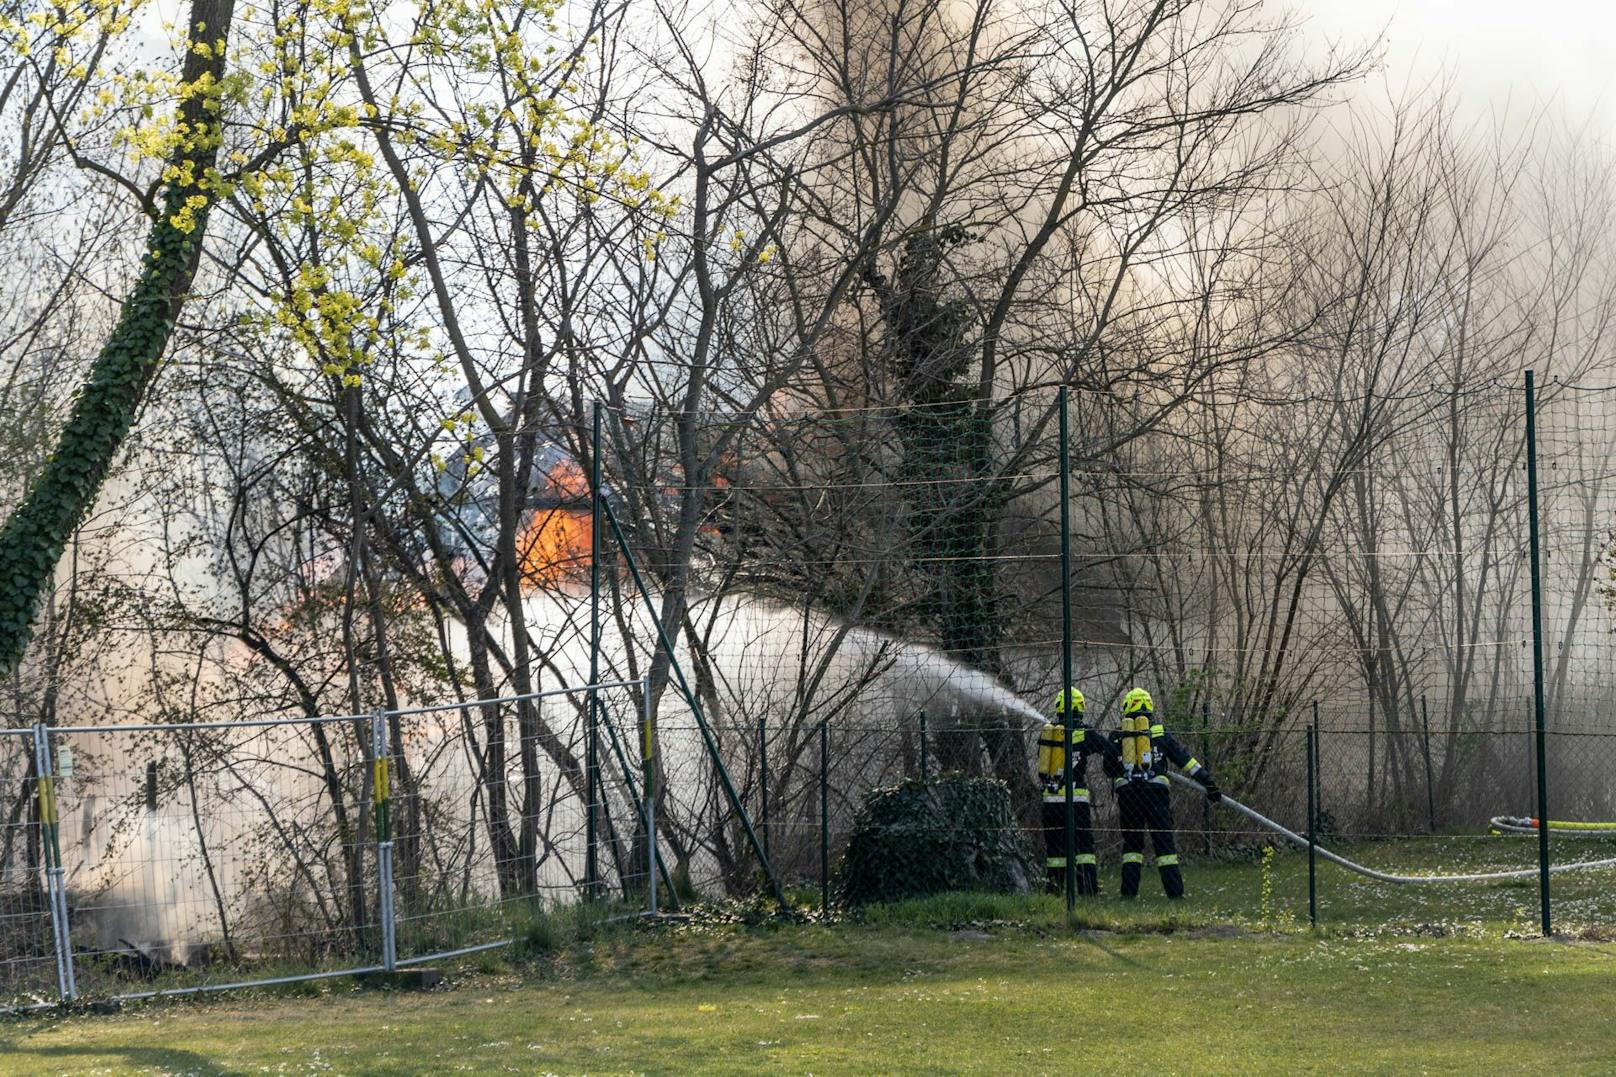 Wohnhausbrand in Seefeld-Kadolz: Die Feuerwehr im Einsatz